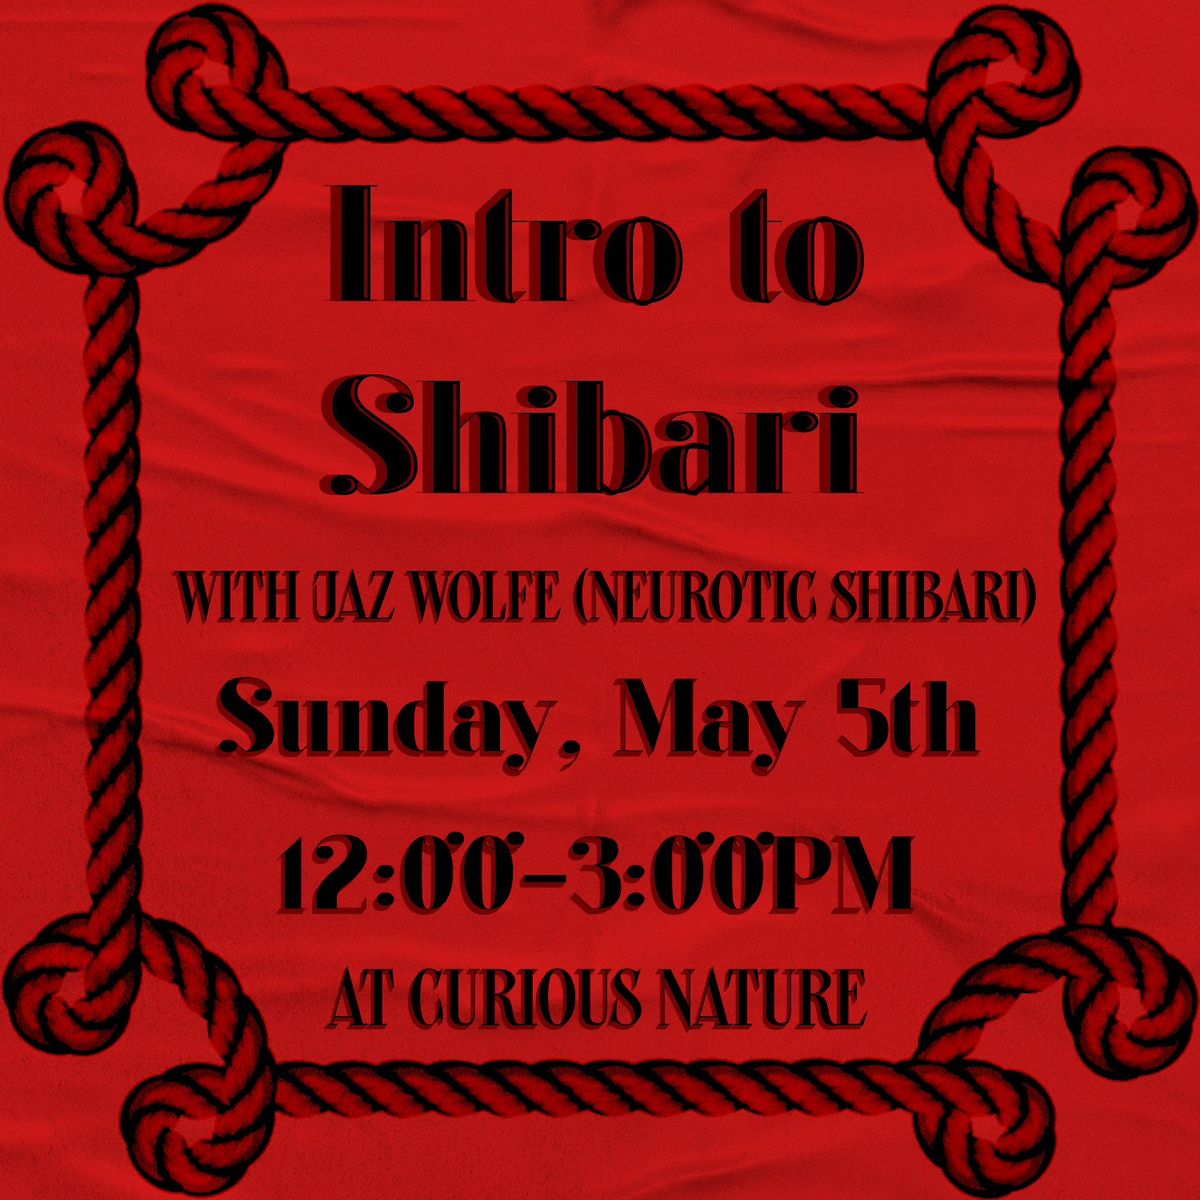 Intro to Shibari